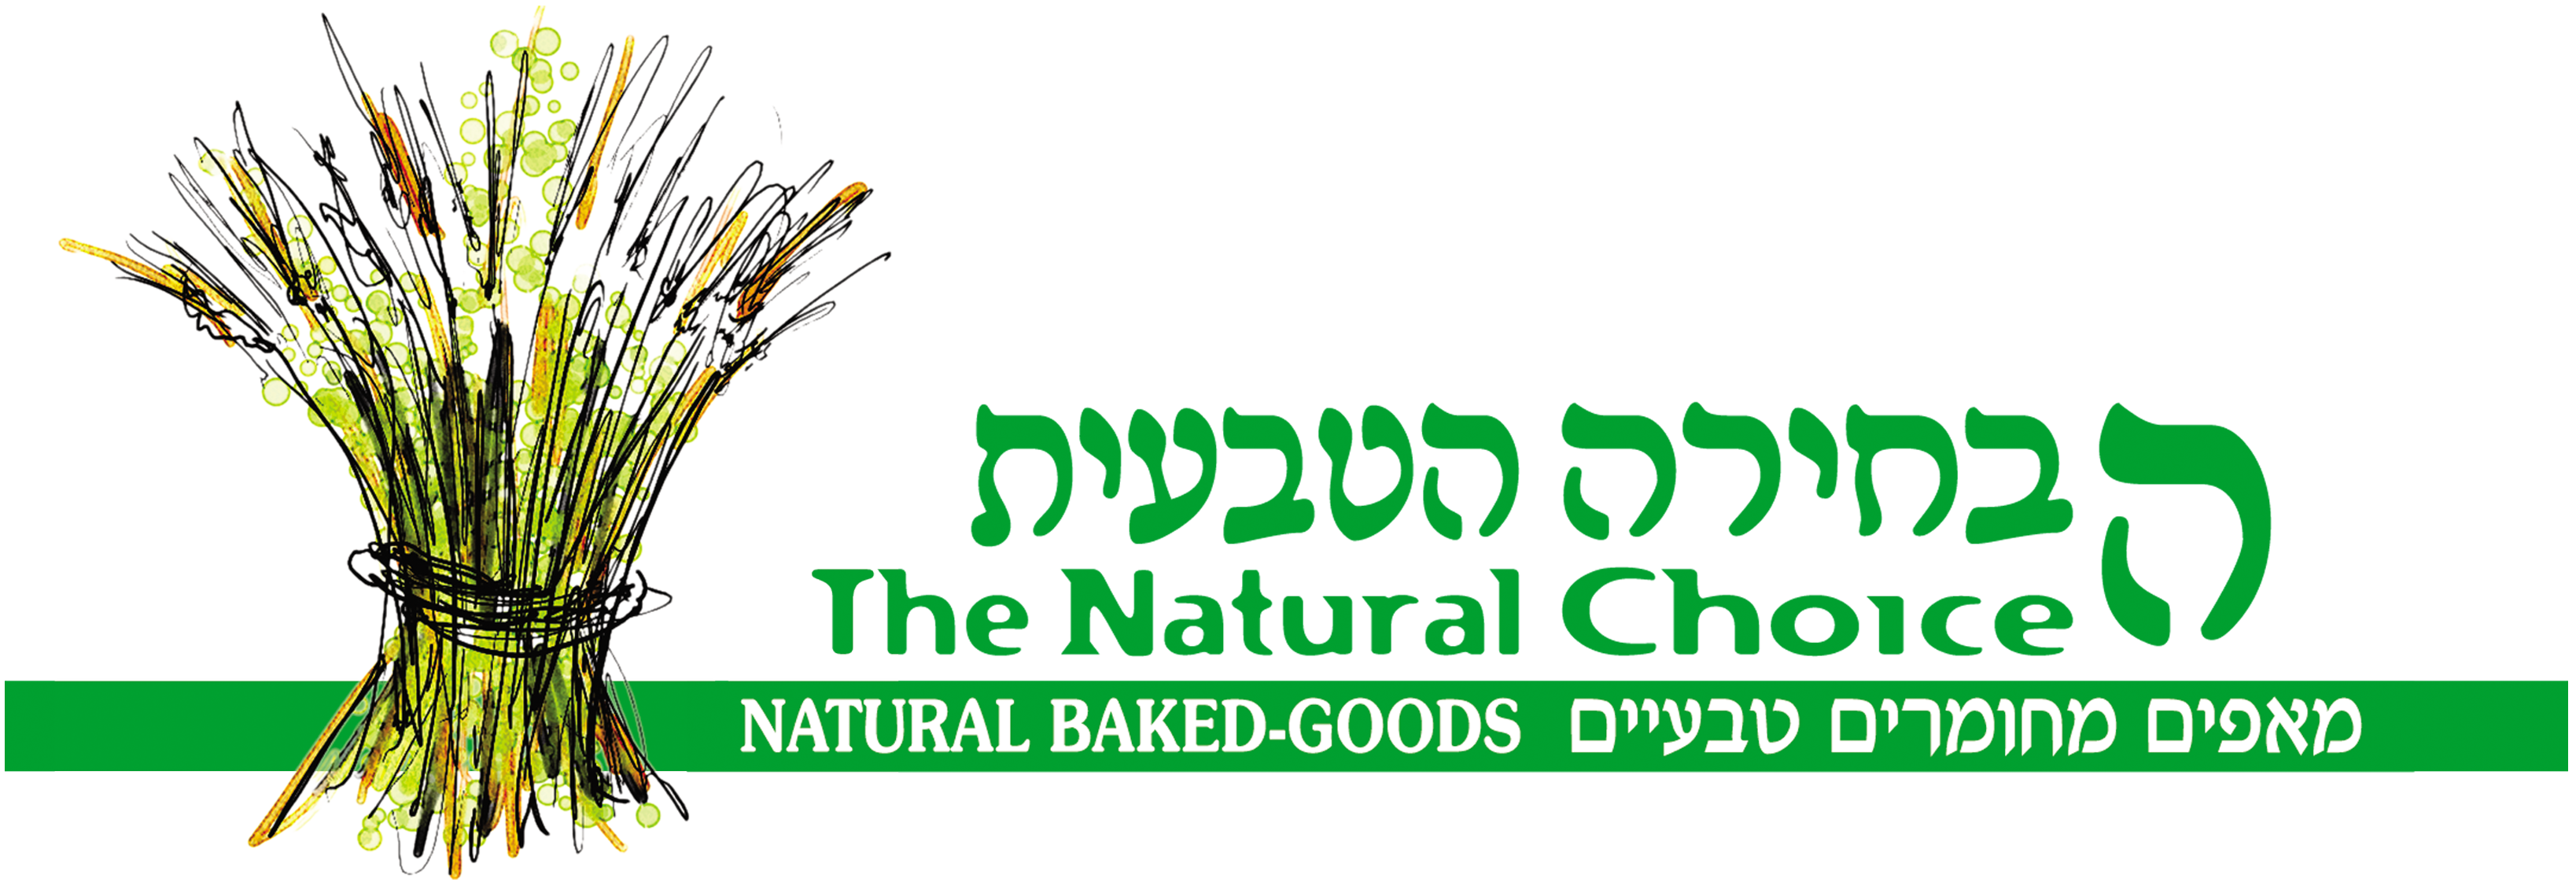 לוגו הבחירה הטבעית